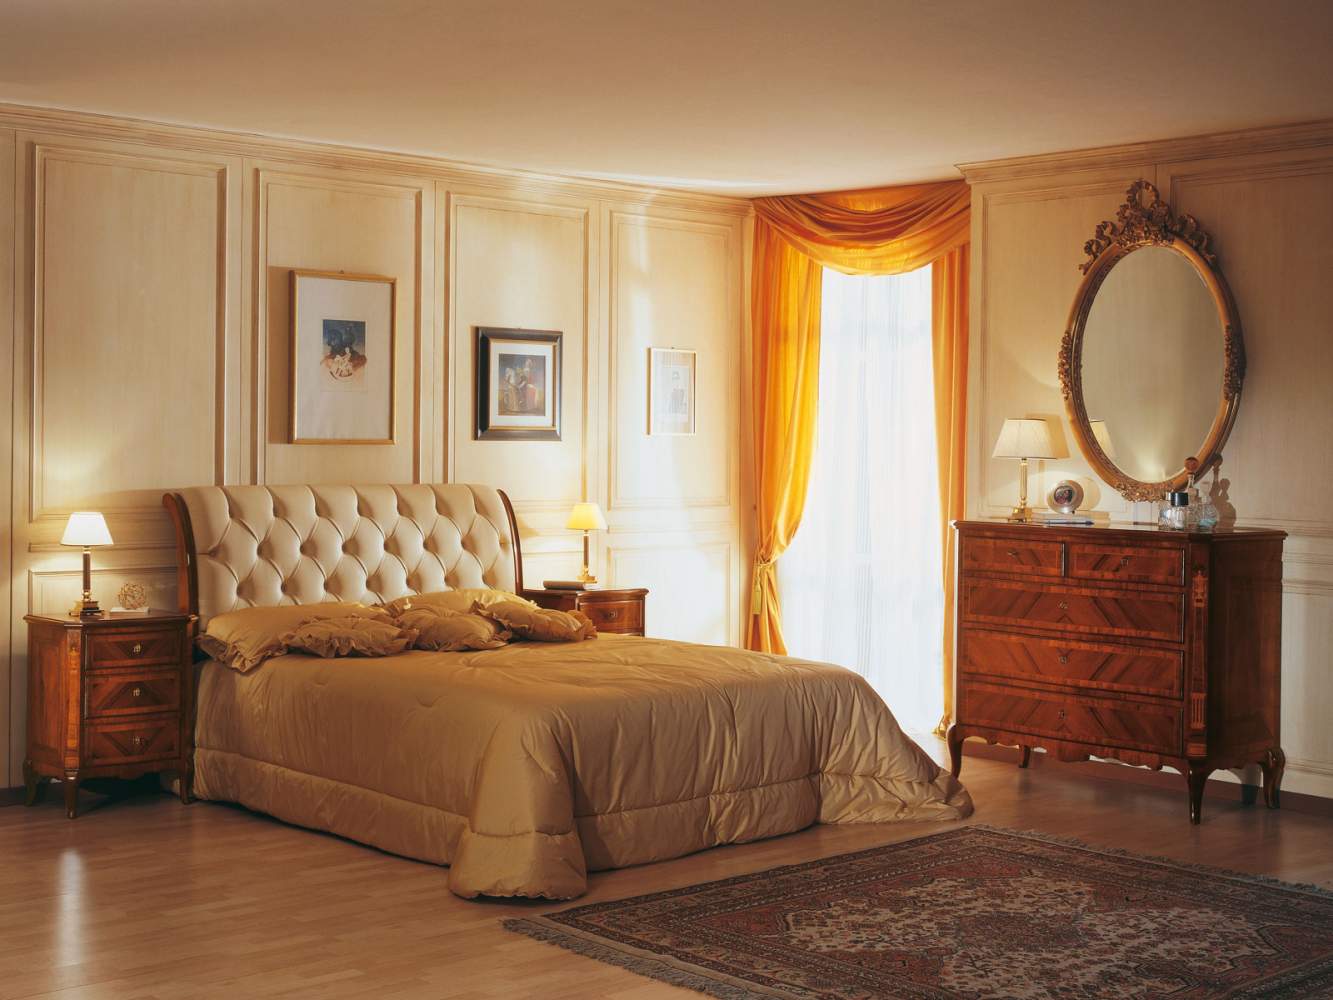 Chambre à coucher XIXe siècle français, lit en cuir capitonné, miroir ovale, commode en noyer